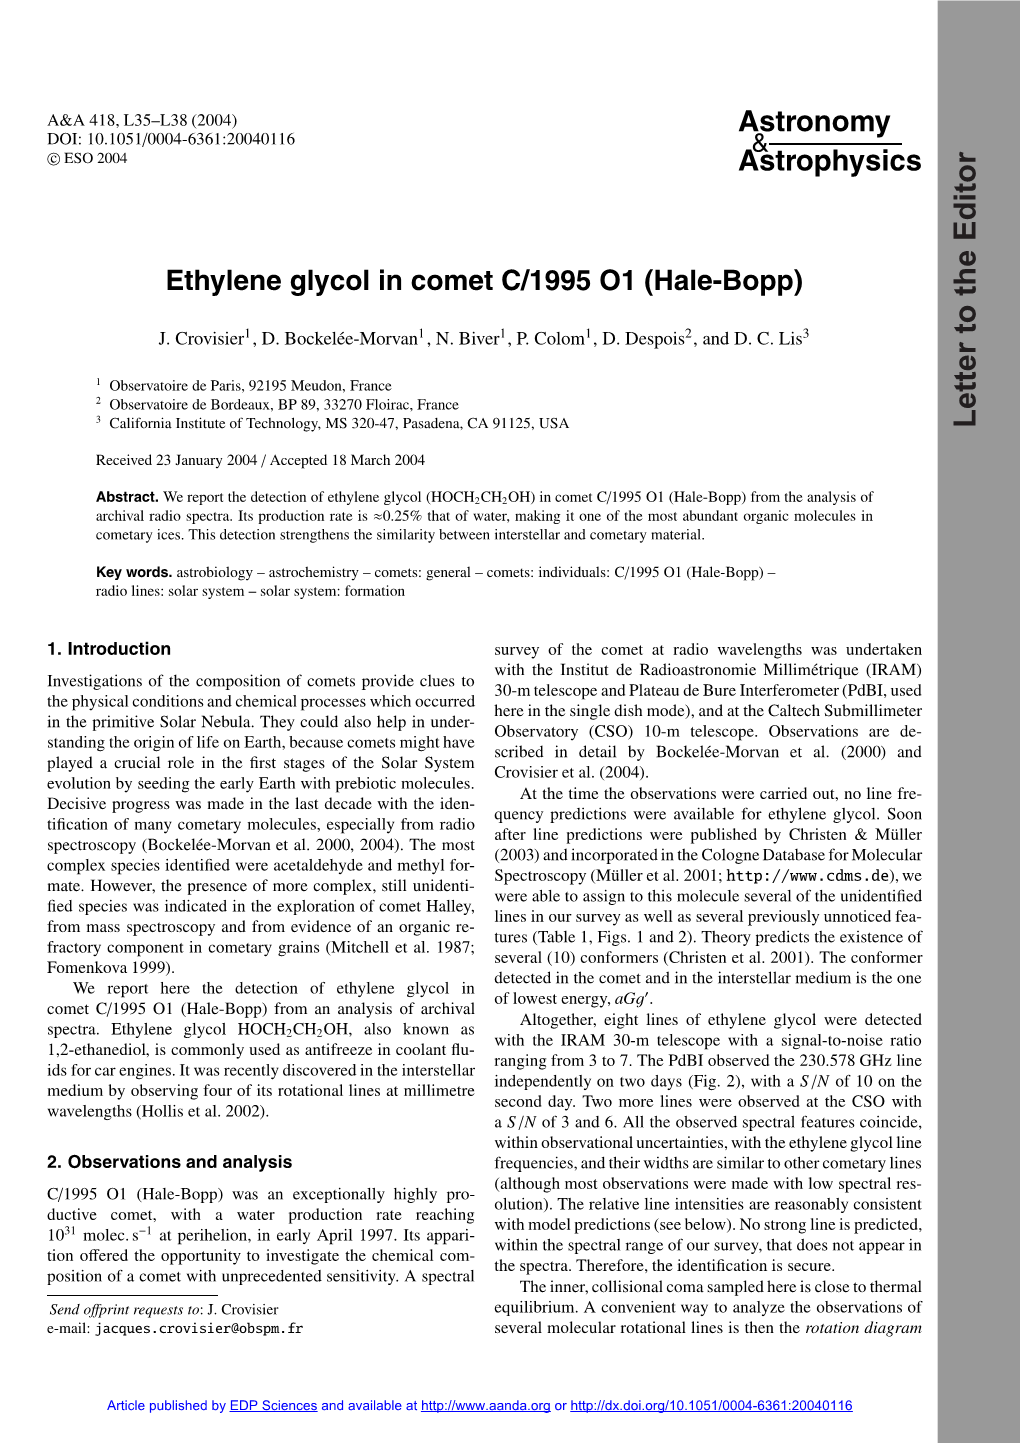 Ethylene Glycol in Comet C/1995 O1 (Hale-Bopp)